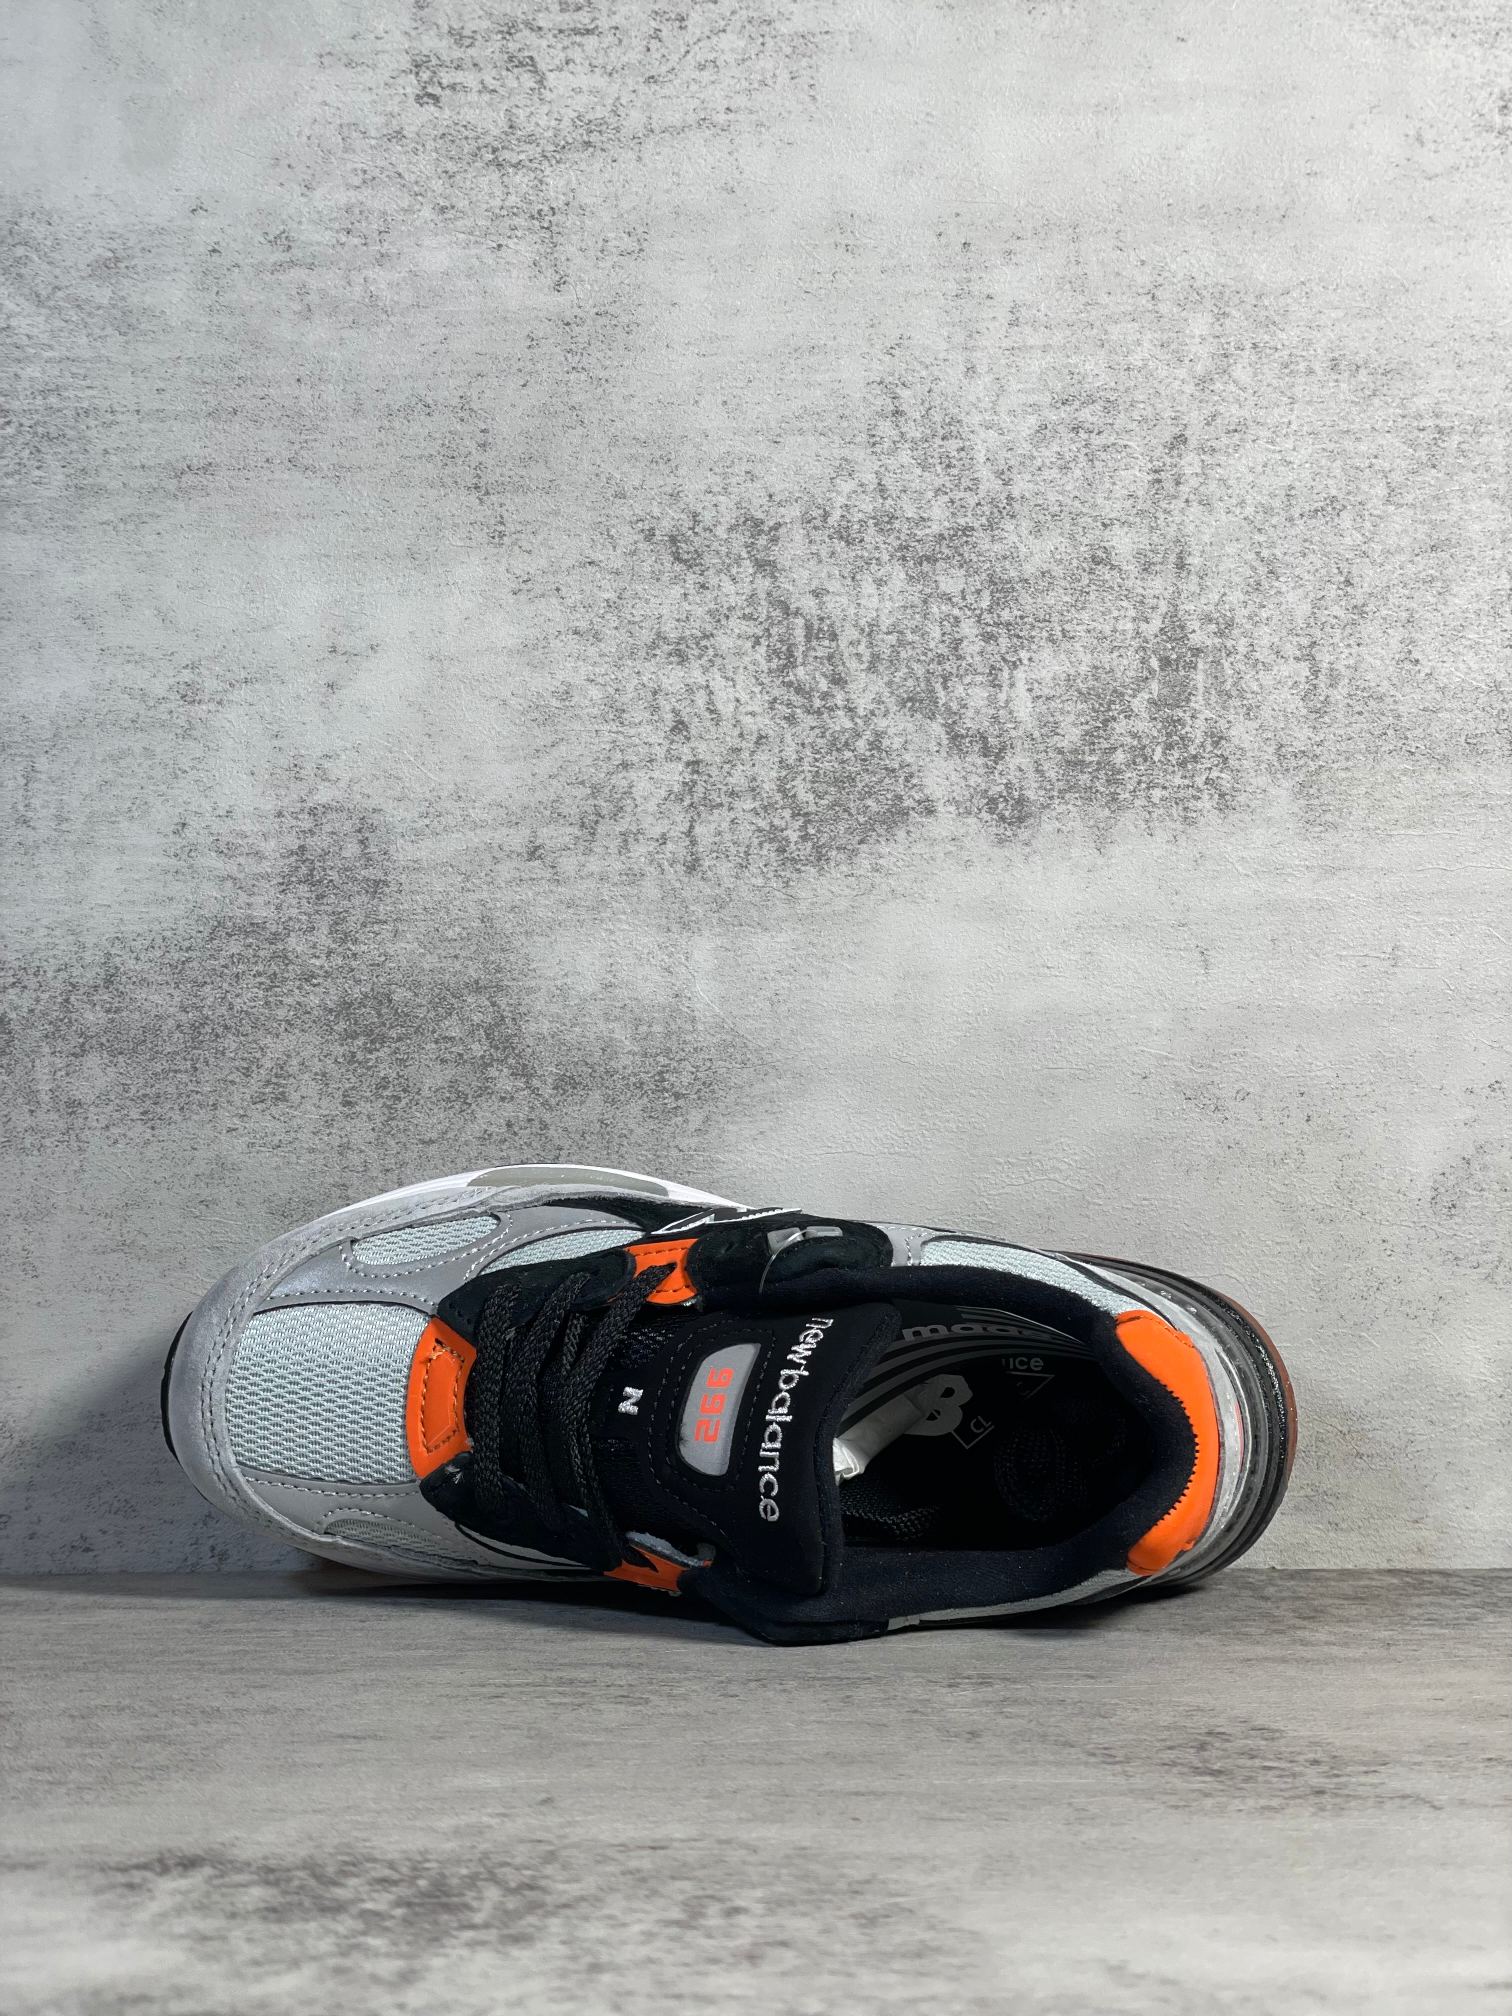 NB992联名款M992GBO外贸纯原版全码出货灰橙色全市场唯一原鞋开发全鞋使用原材料打造大底单独开模打